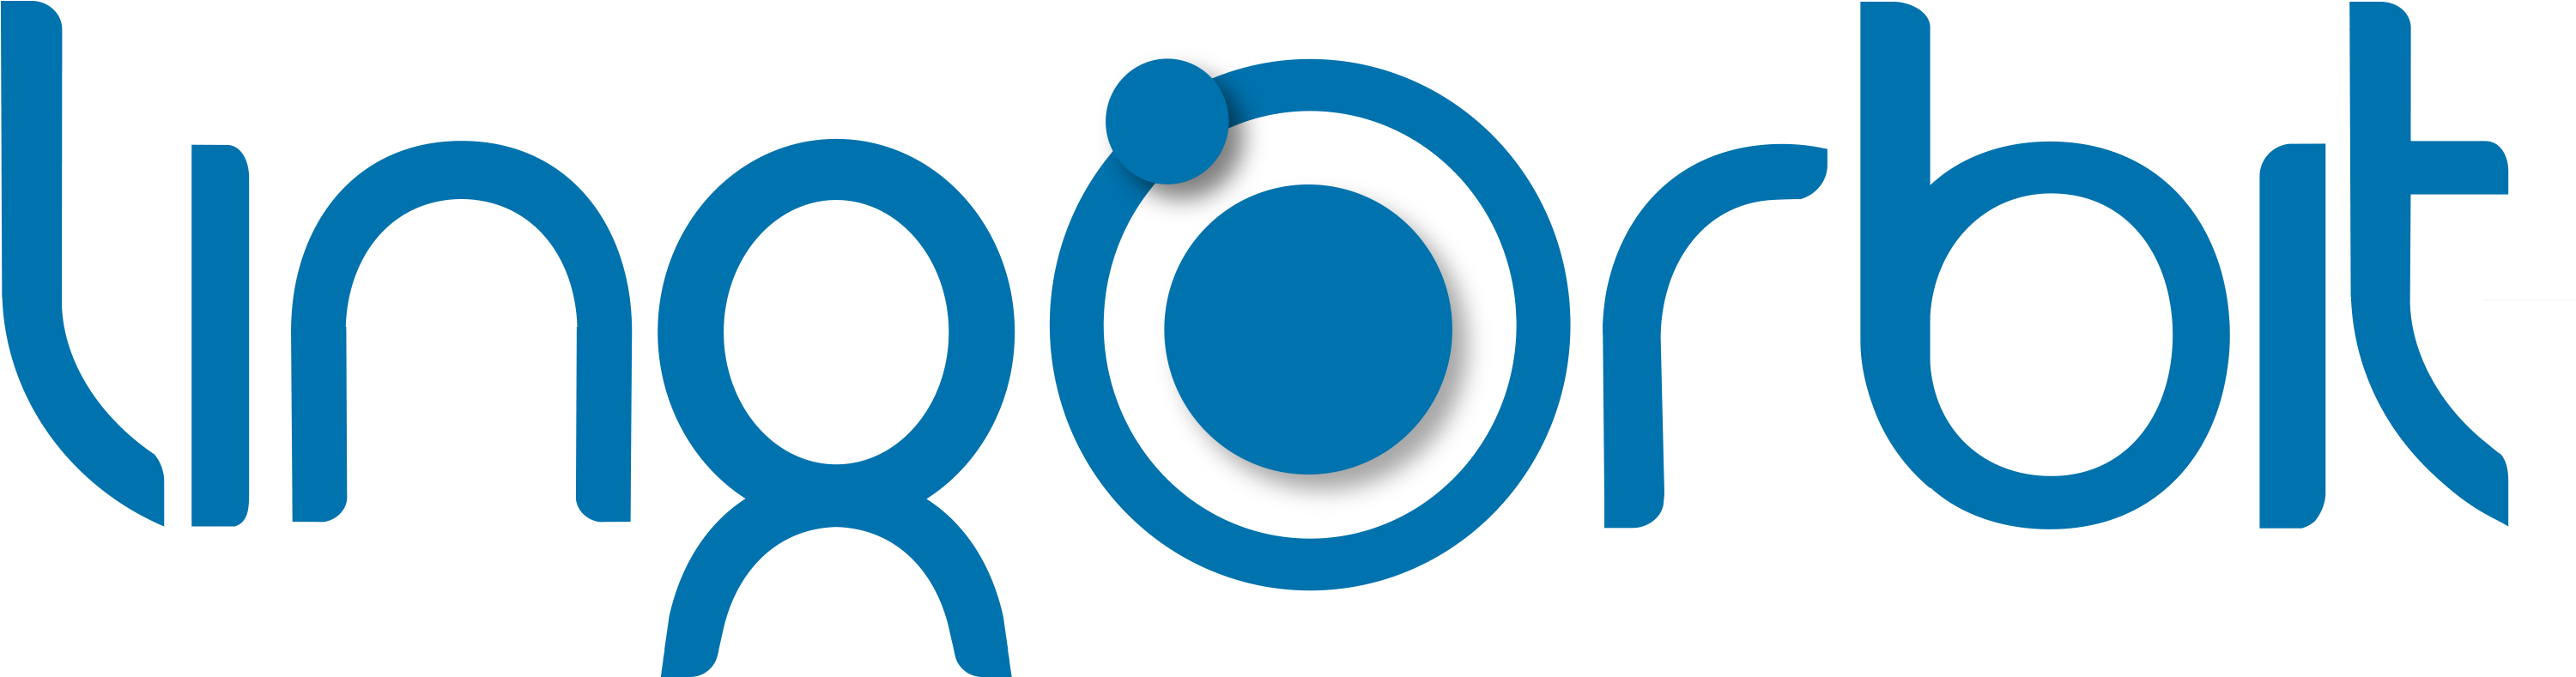 Inorbit Mall Logo PNG image